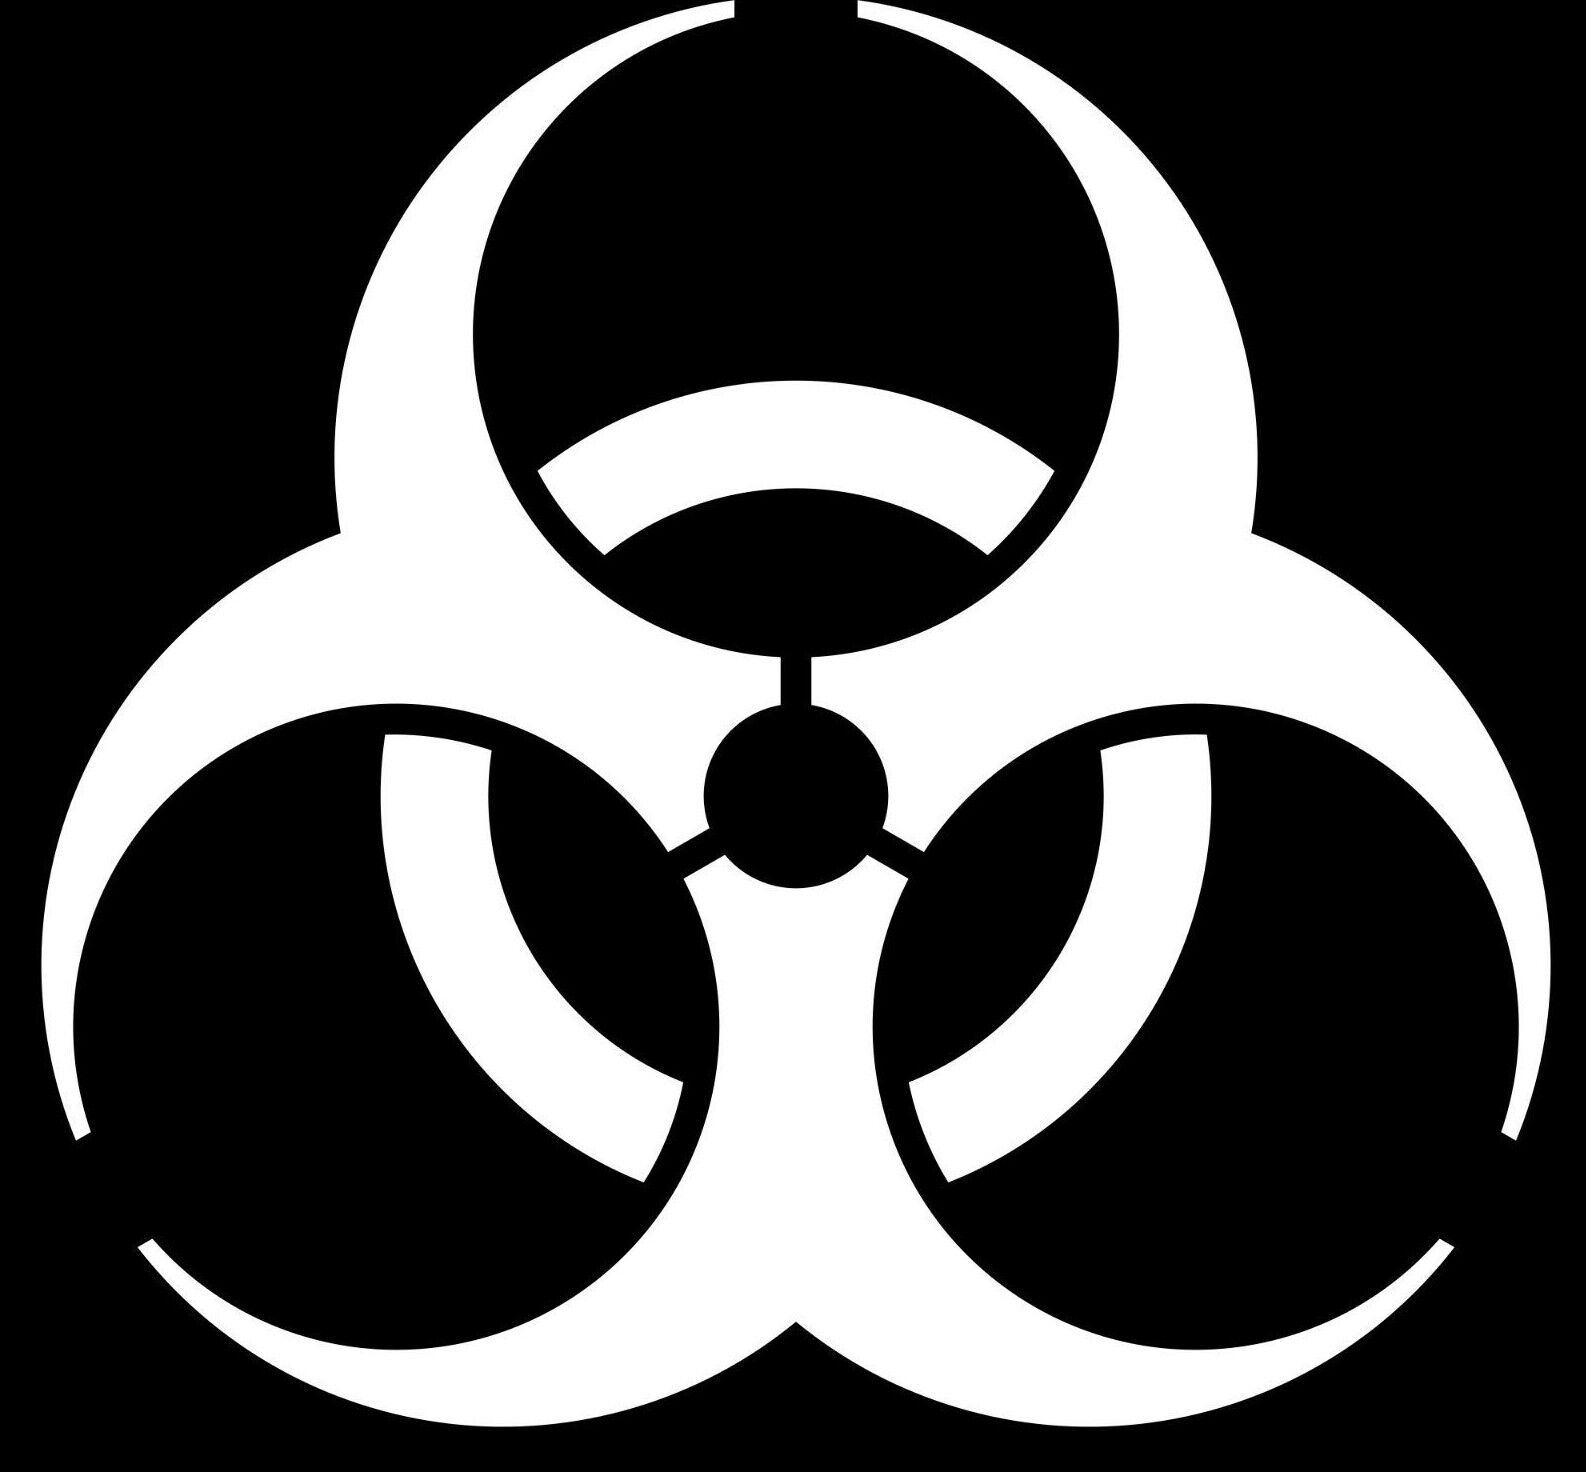 Biohazard Decal - Buy 1 Get 1 Free - Safety Symbol Bio Hazard Decal - BOGO